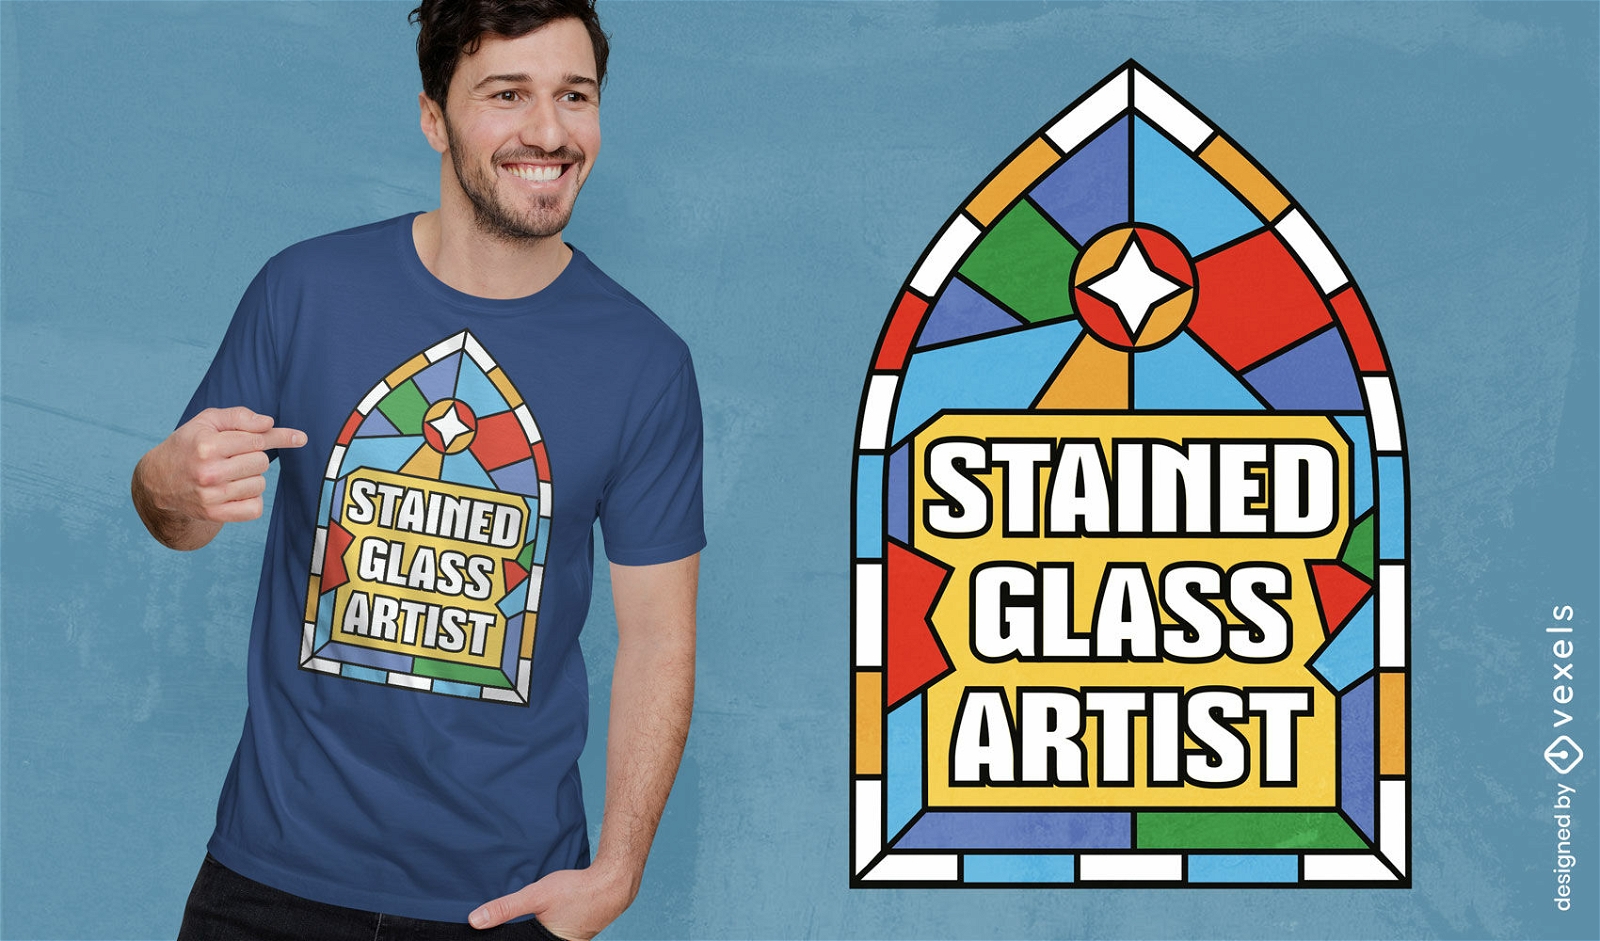 Dise?o de camiseta con cita de artista de vidrieras.